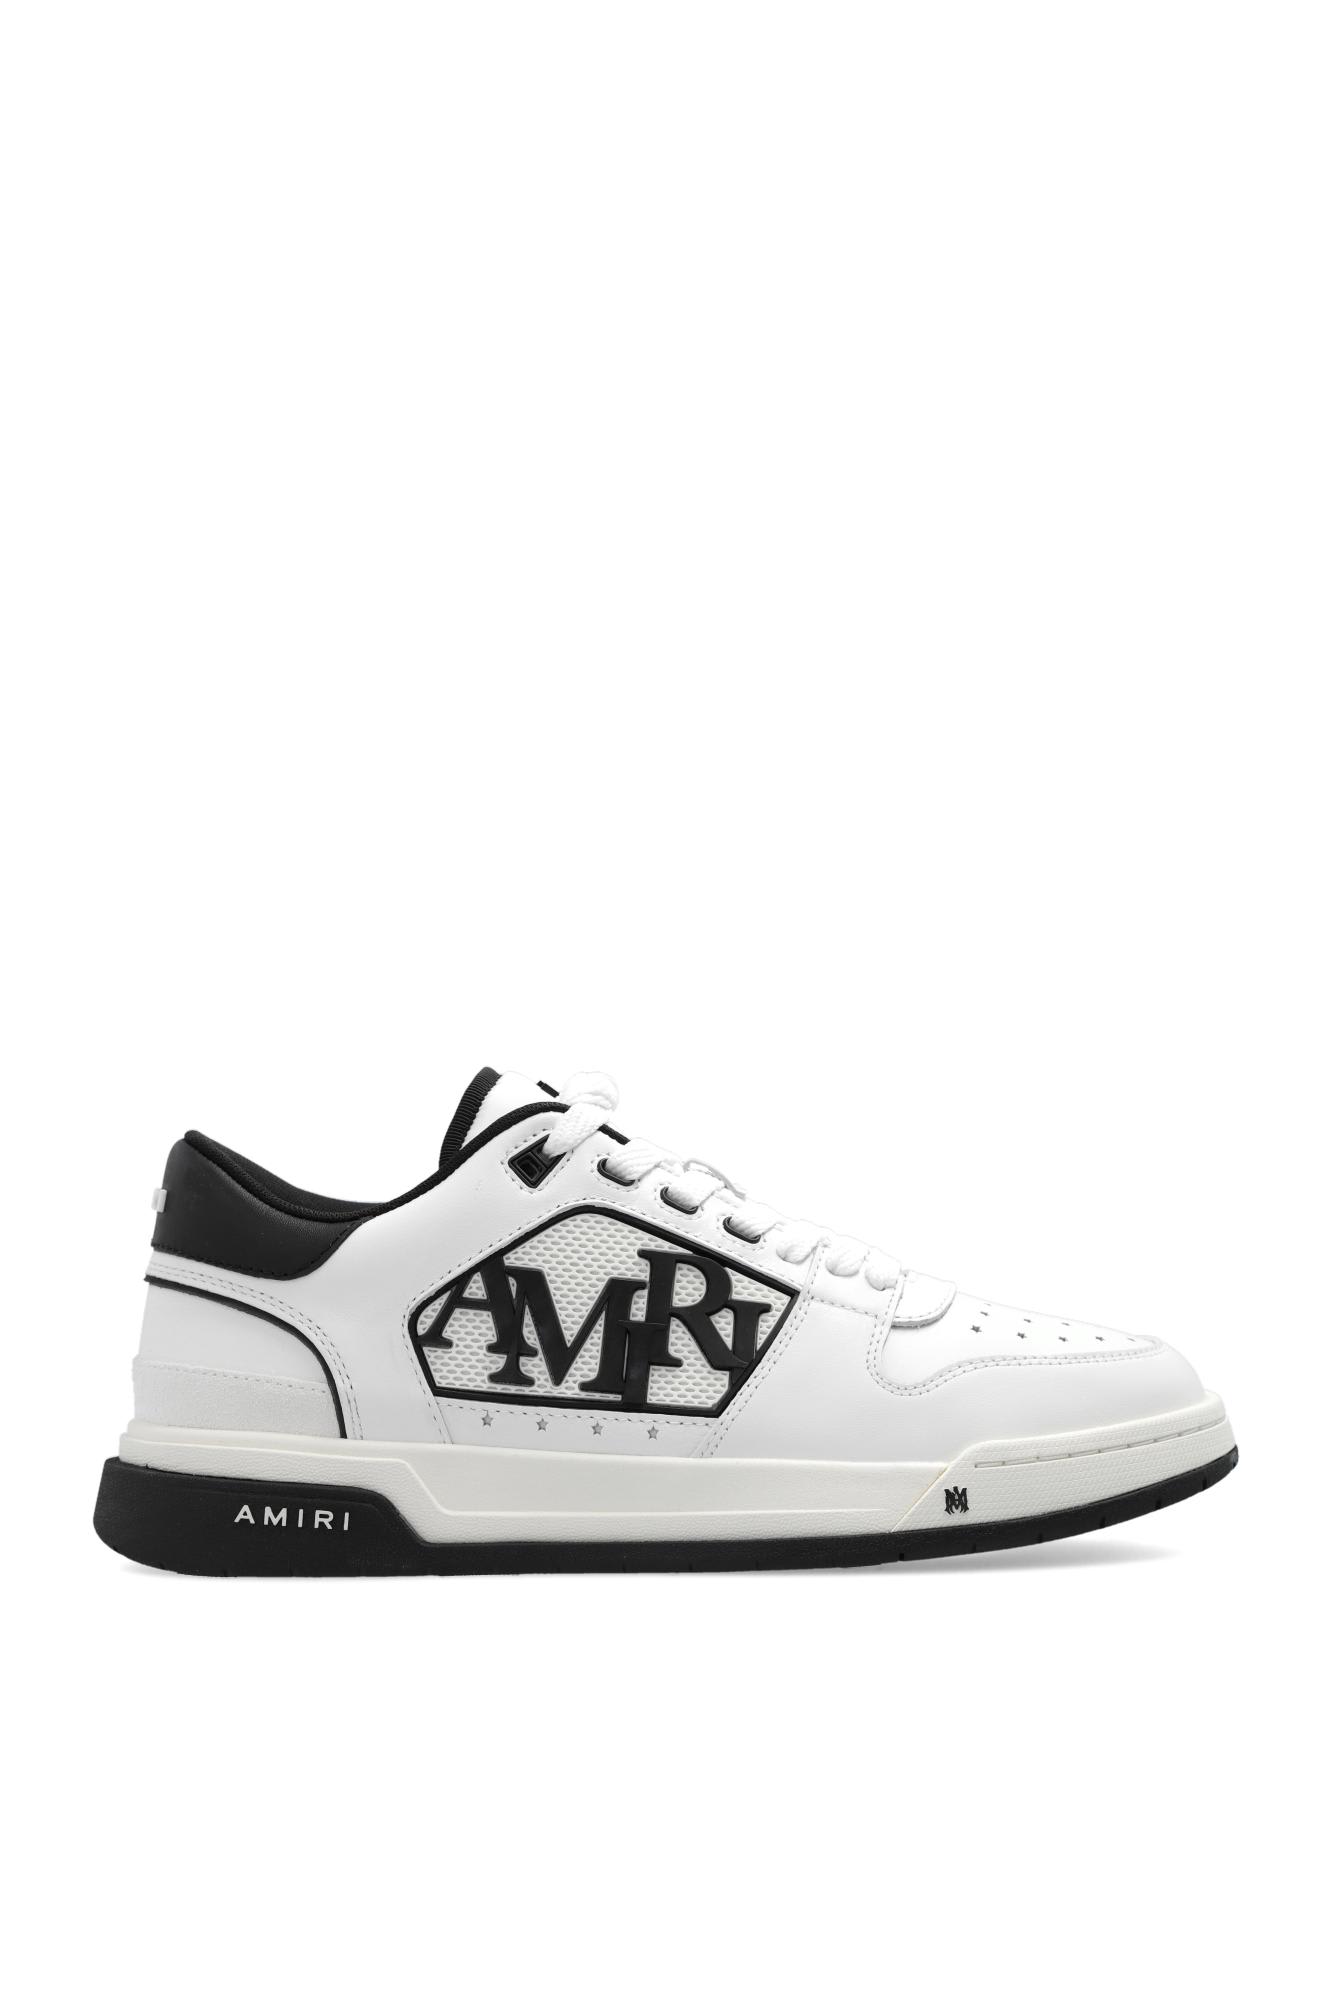 Amiri classic Low Top Sneakers